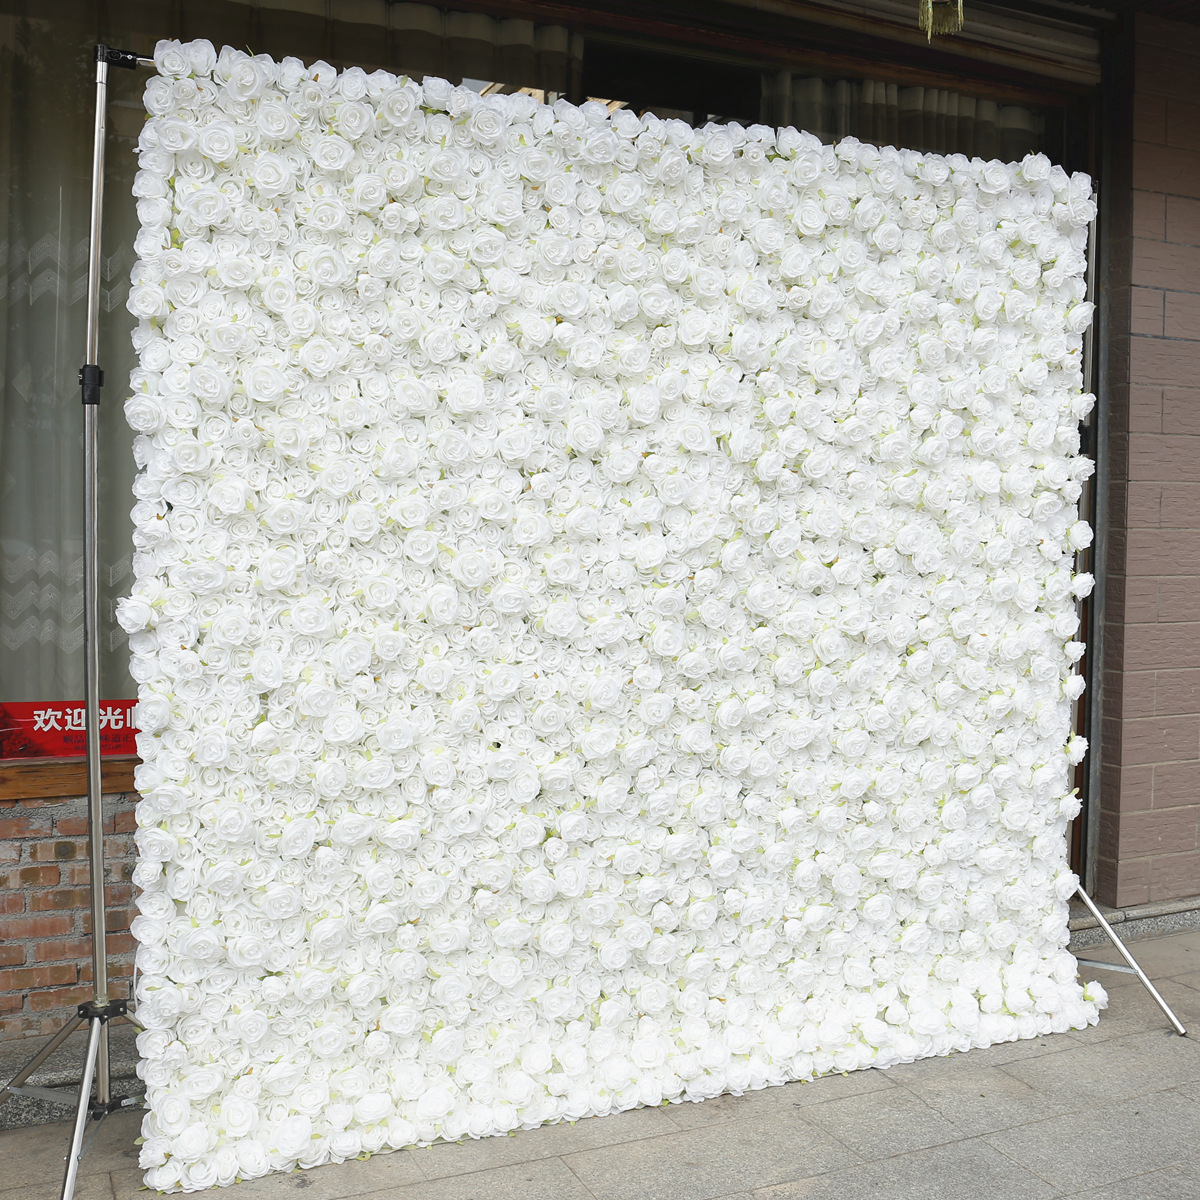 Čistá biela látka spodná ruža stena pozadie steny s vysokou hustotou 5D svadobná výzdoba svadobná výzdoba